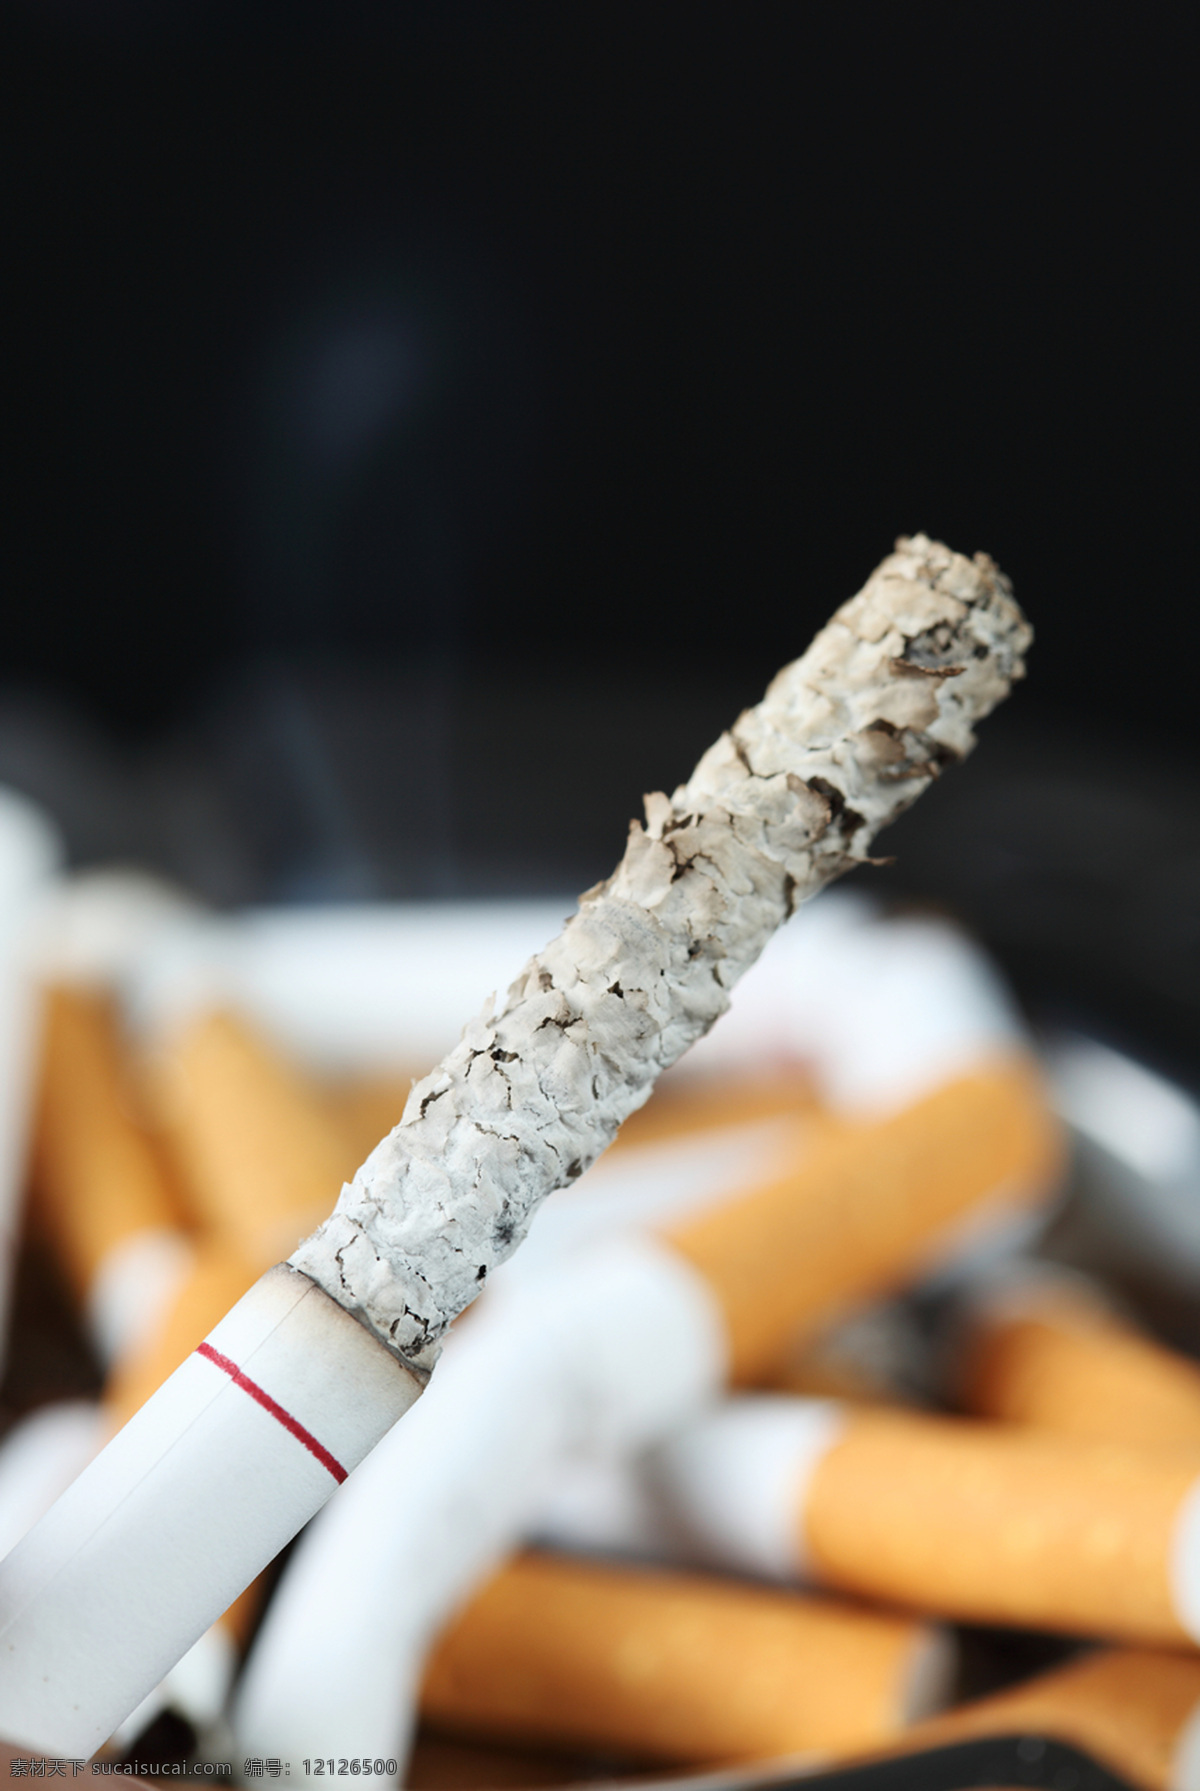 烟蒂 烟头 香烟 烟灰缸 烟灰 烟草 日常用品 生活素材 生活百科